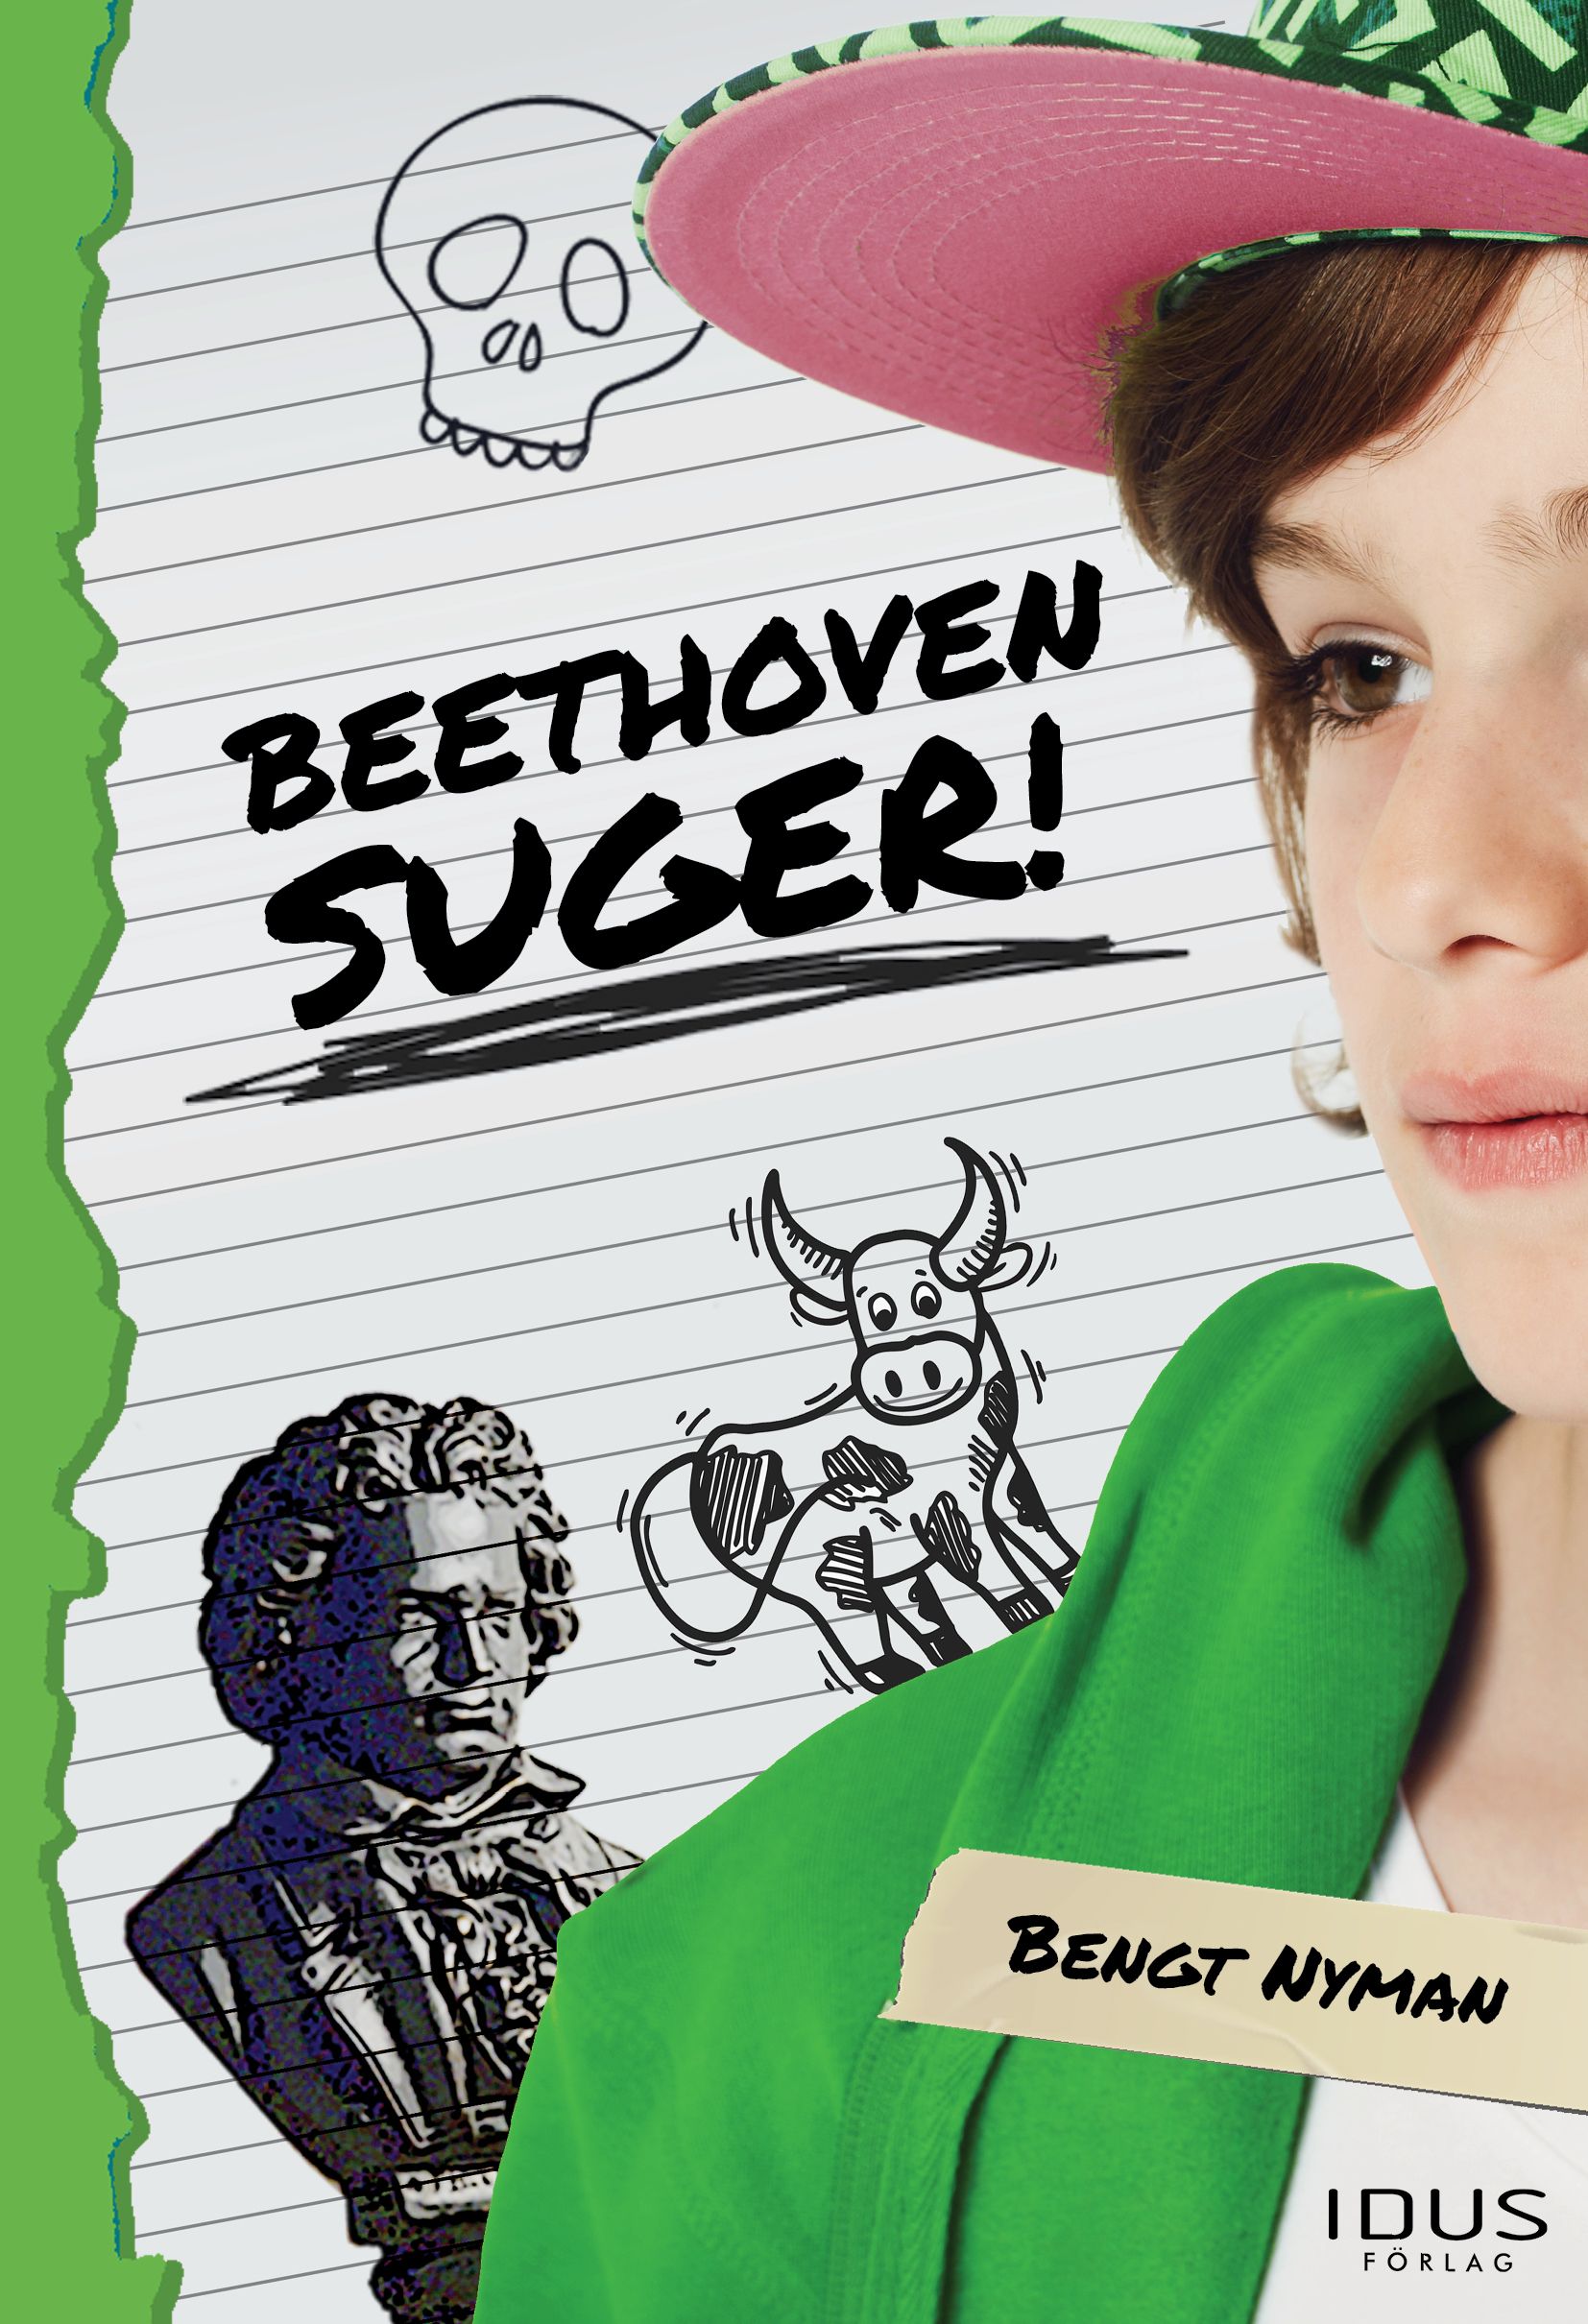 Beethoven suger!, e-bok av Bengt Nyman